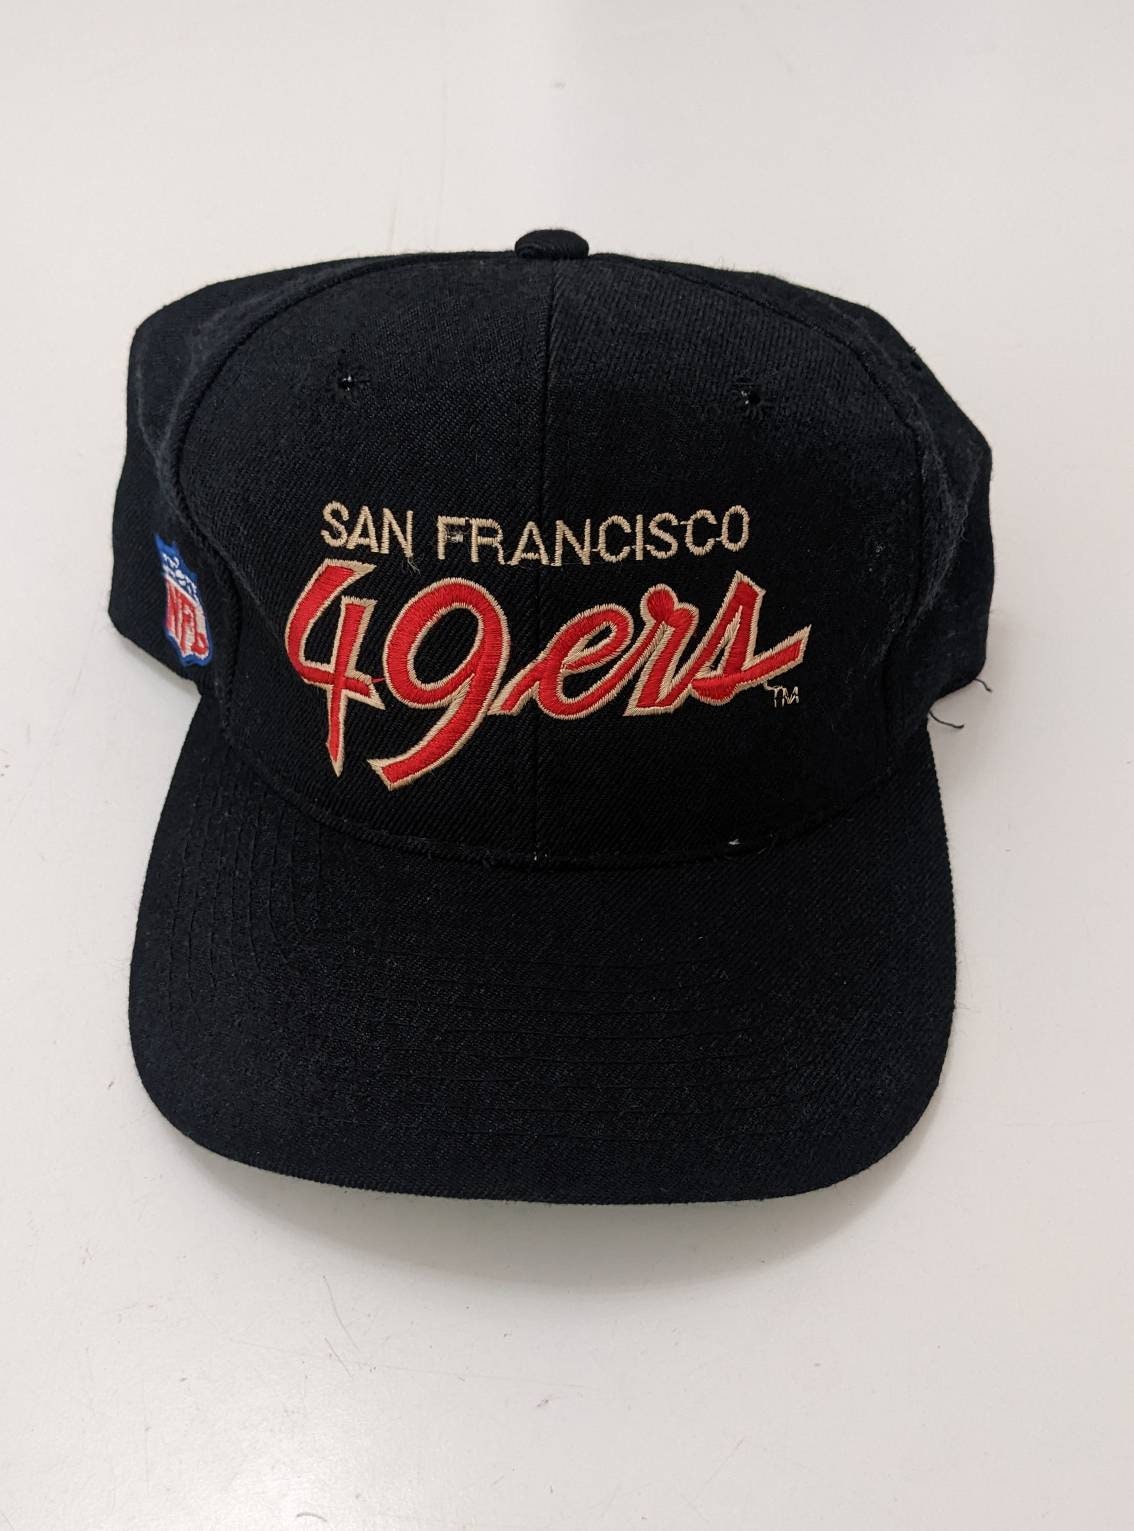 49ers cursive hat